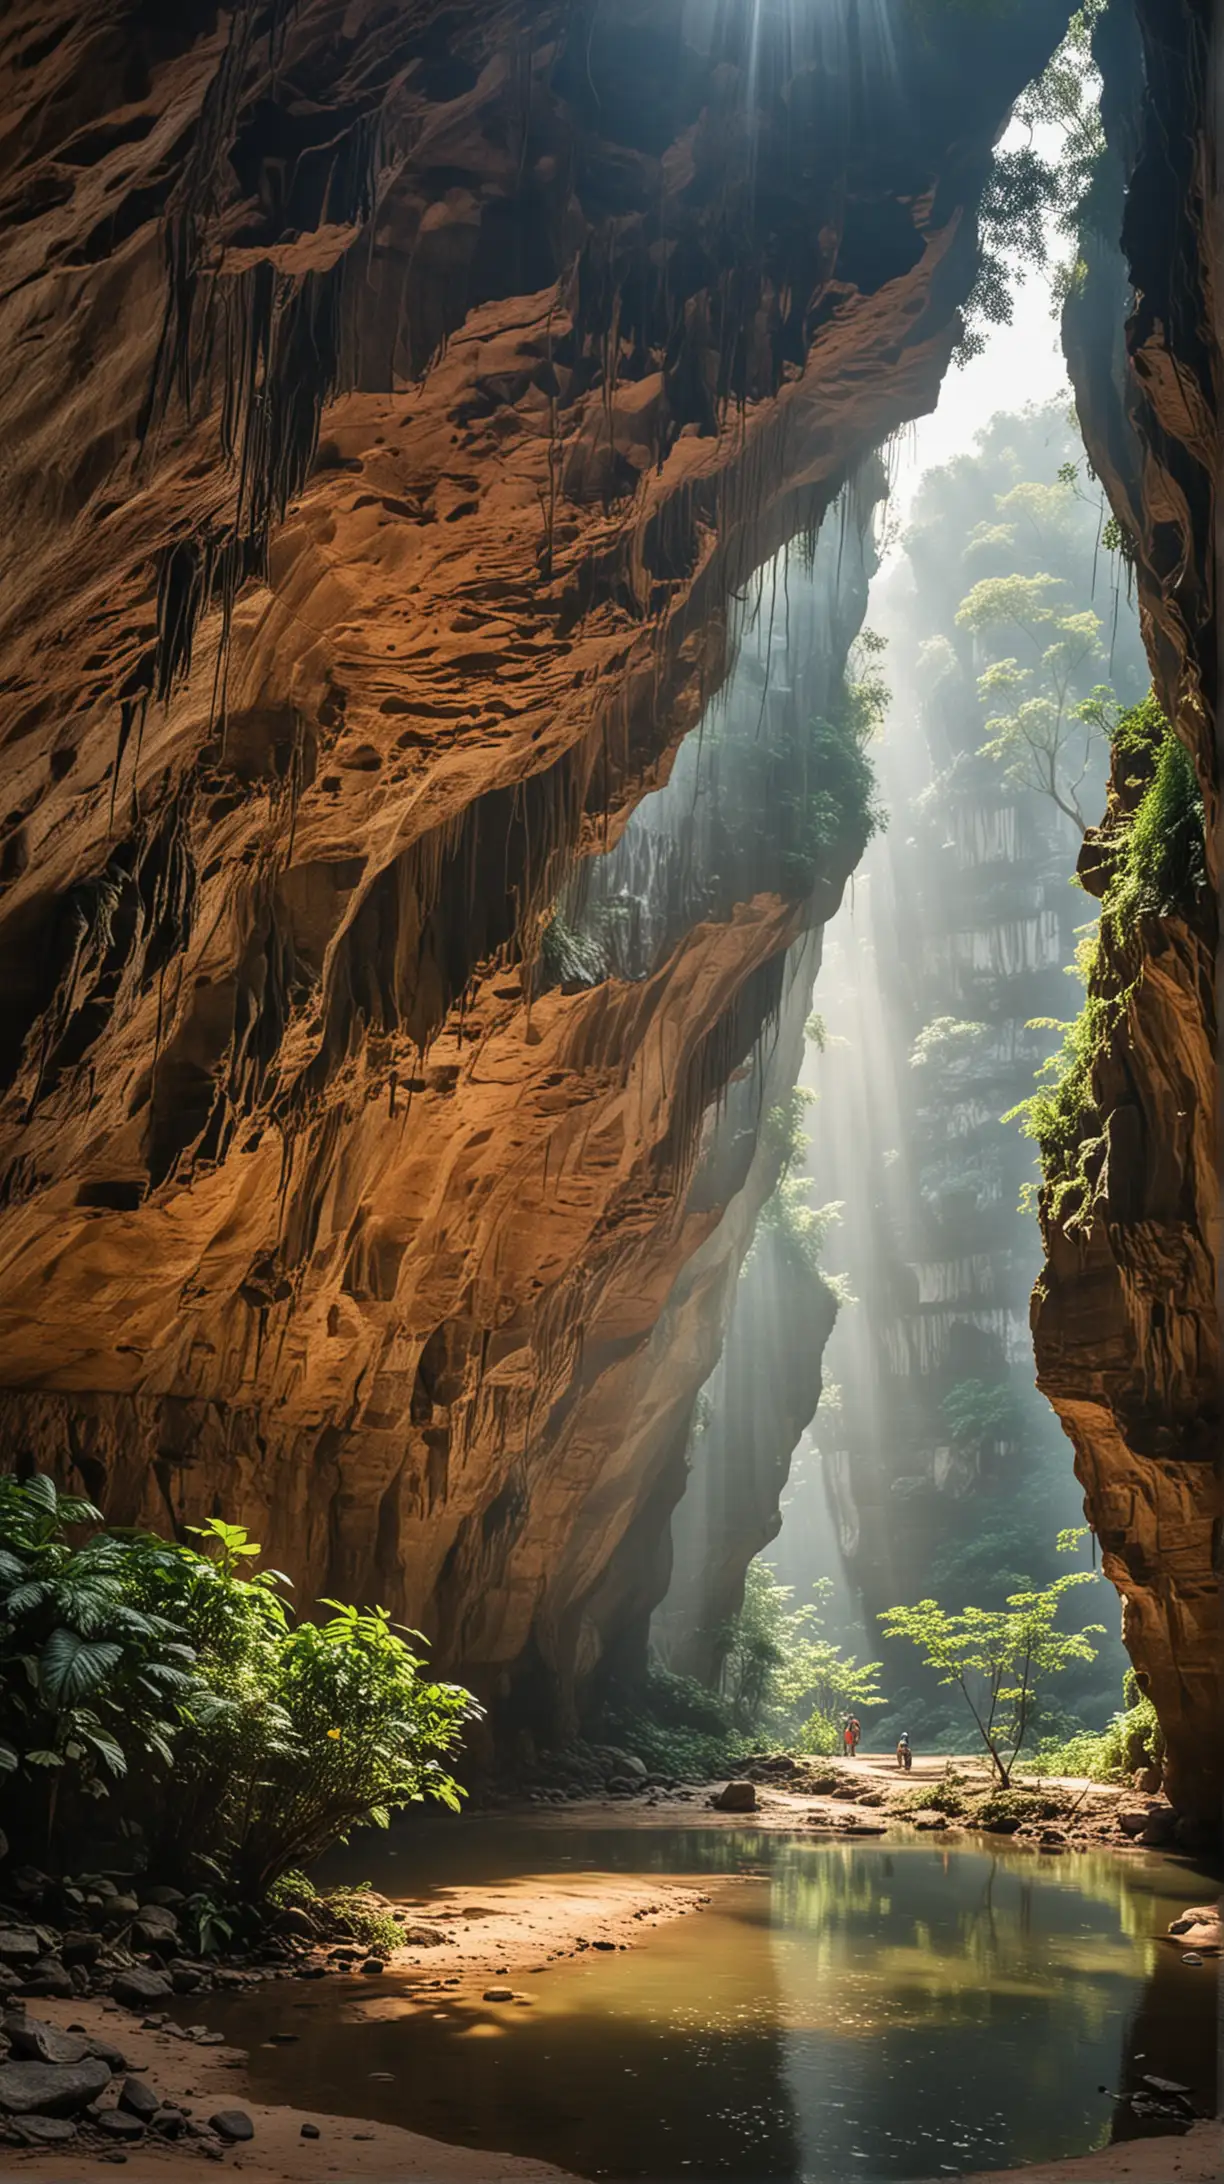  Son Doong Cave in Vietnam exterior